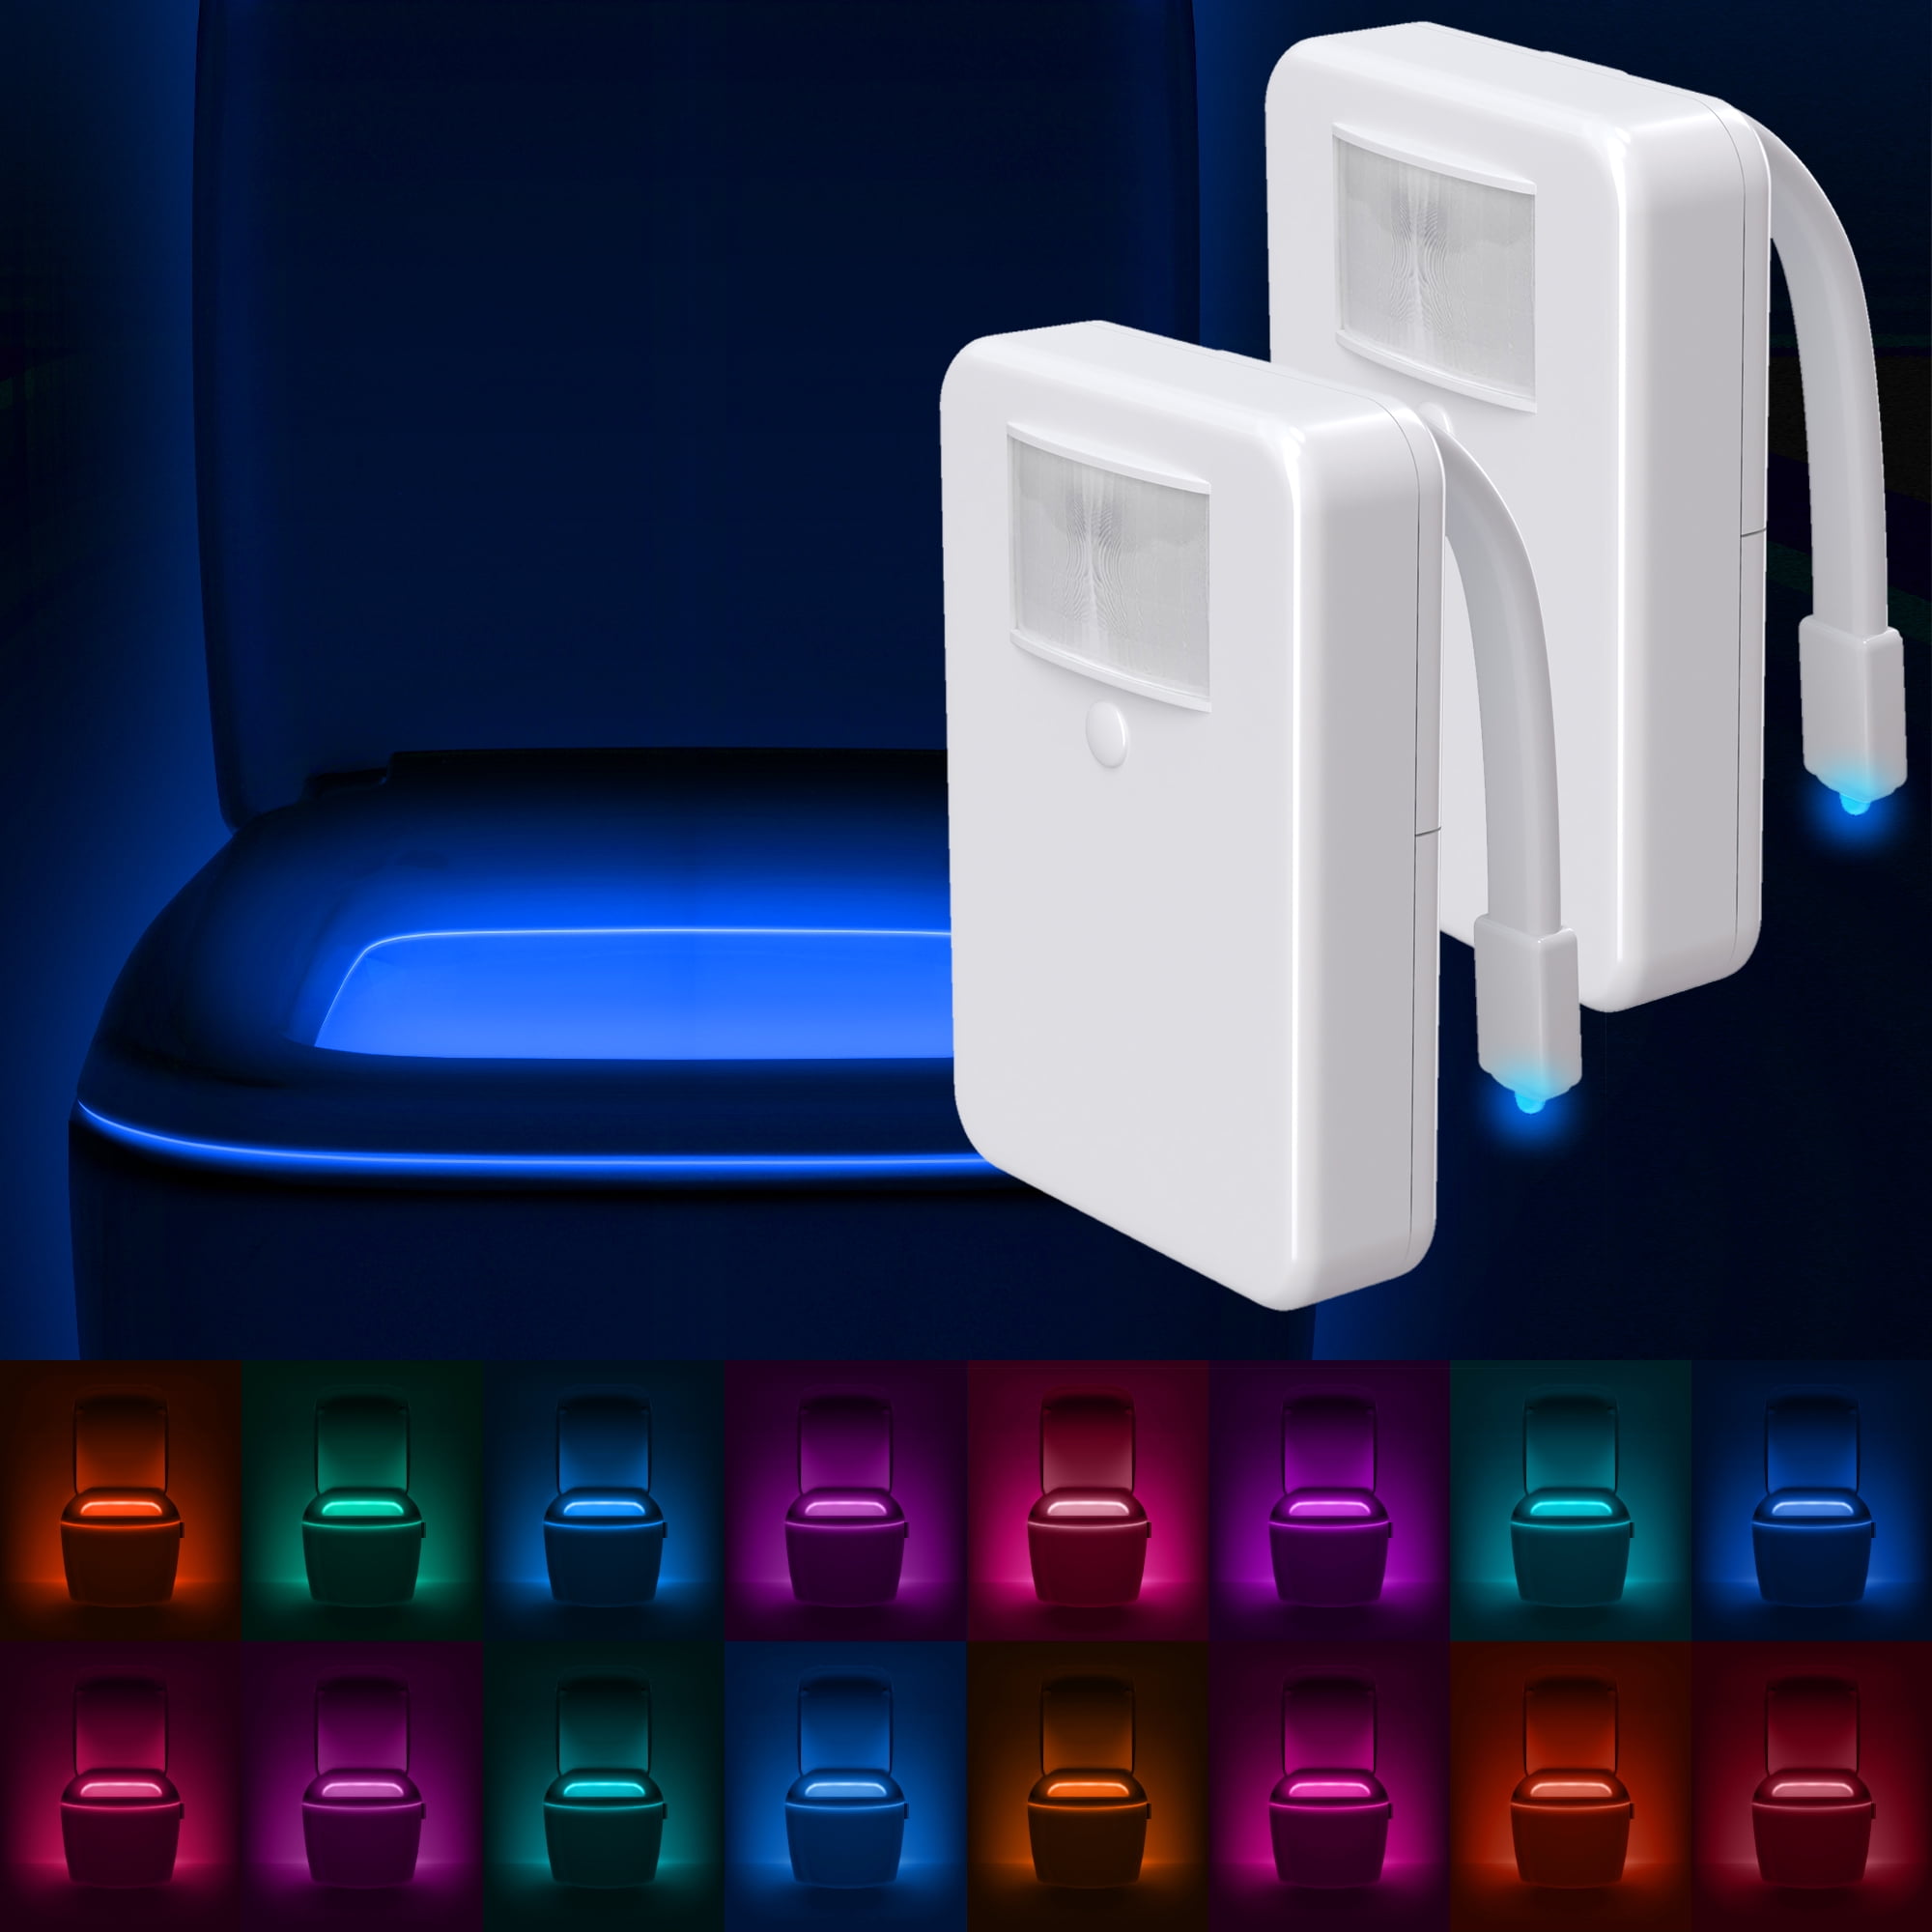 Details about   Toilet Light Motion Detection Advanced 16-Color LED Toilet Bowl Light 